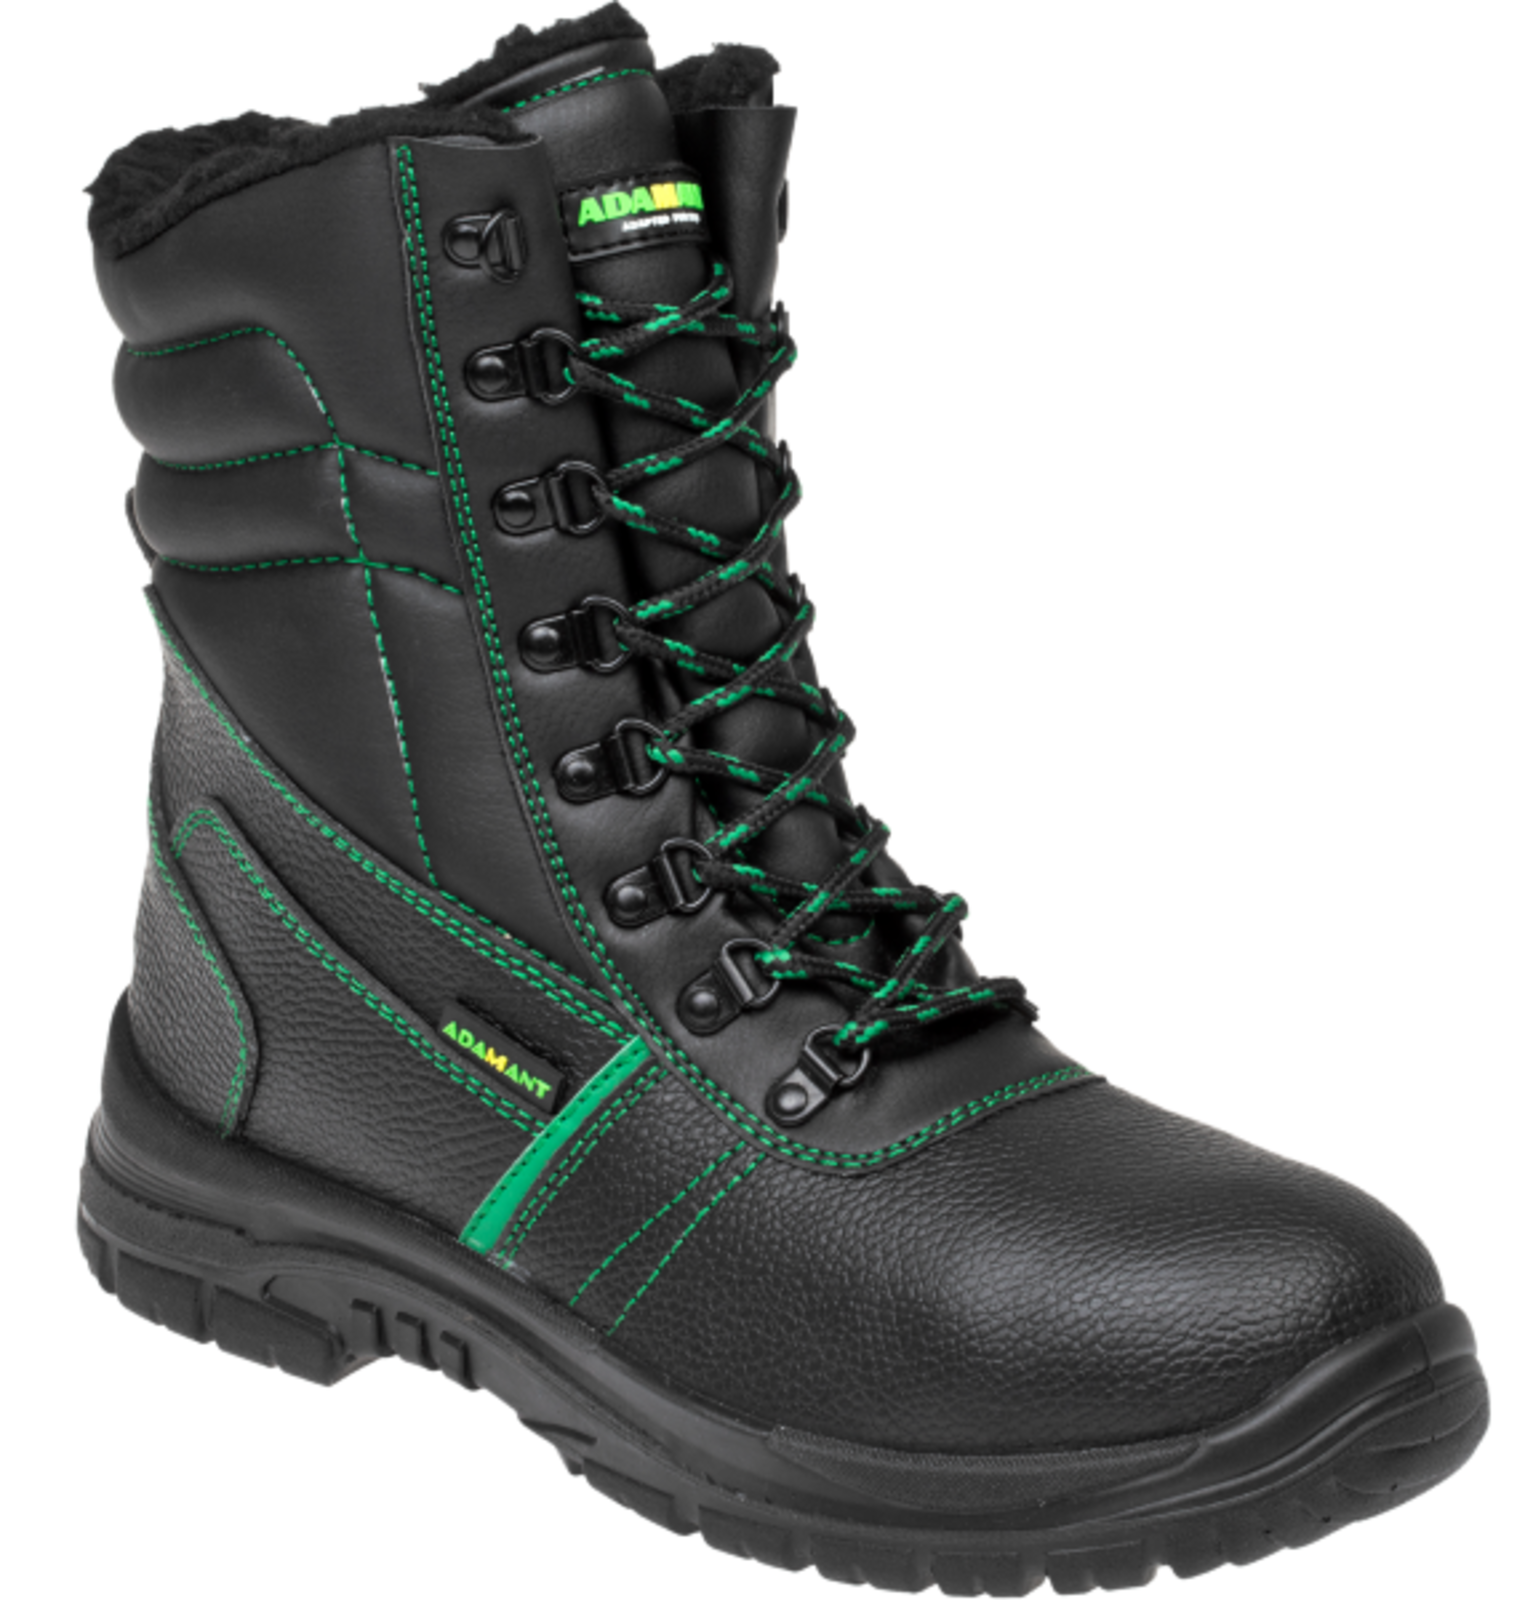 Zimná vysoká bezpečnostná obuv Adamant Classic S3 - veľkosť: 41, farba: čierna